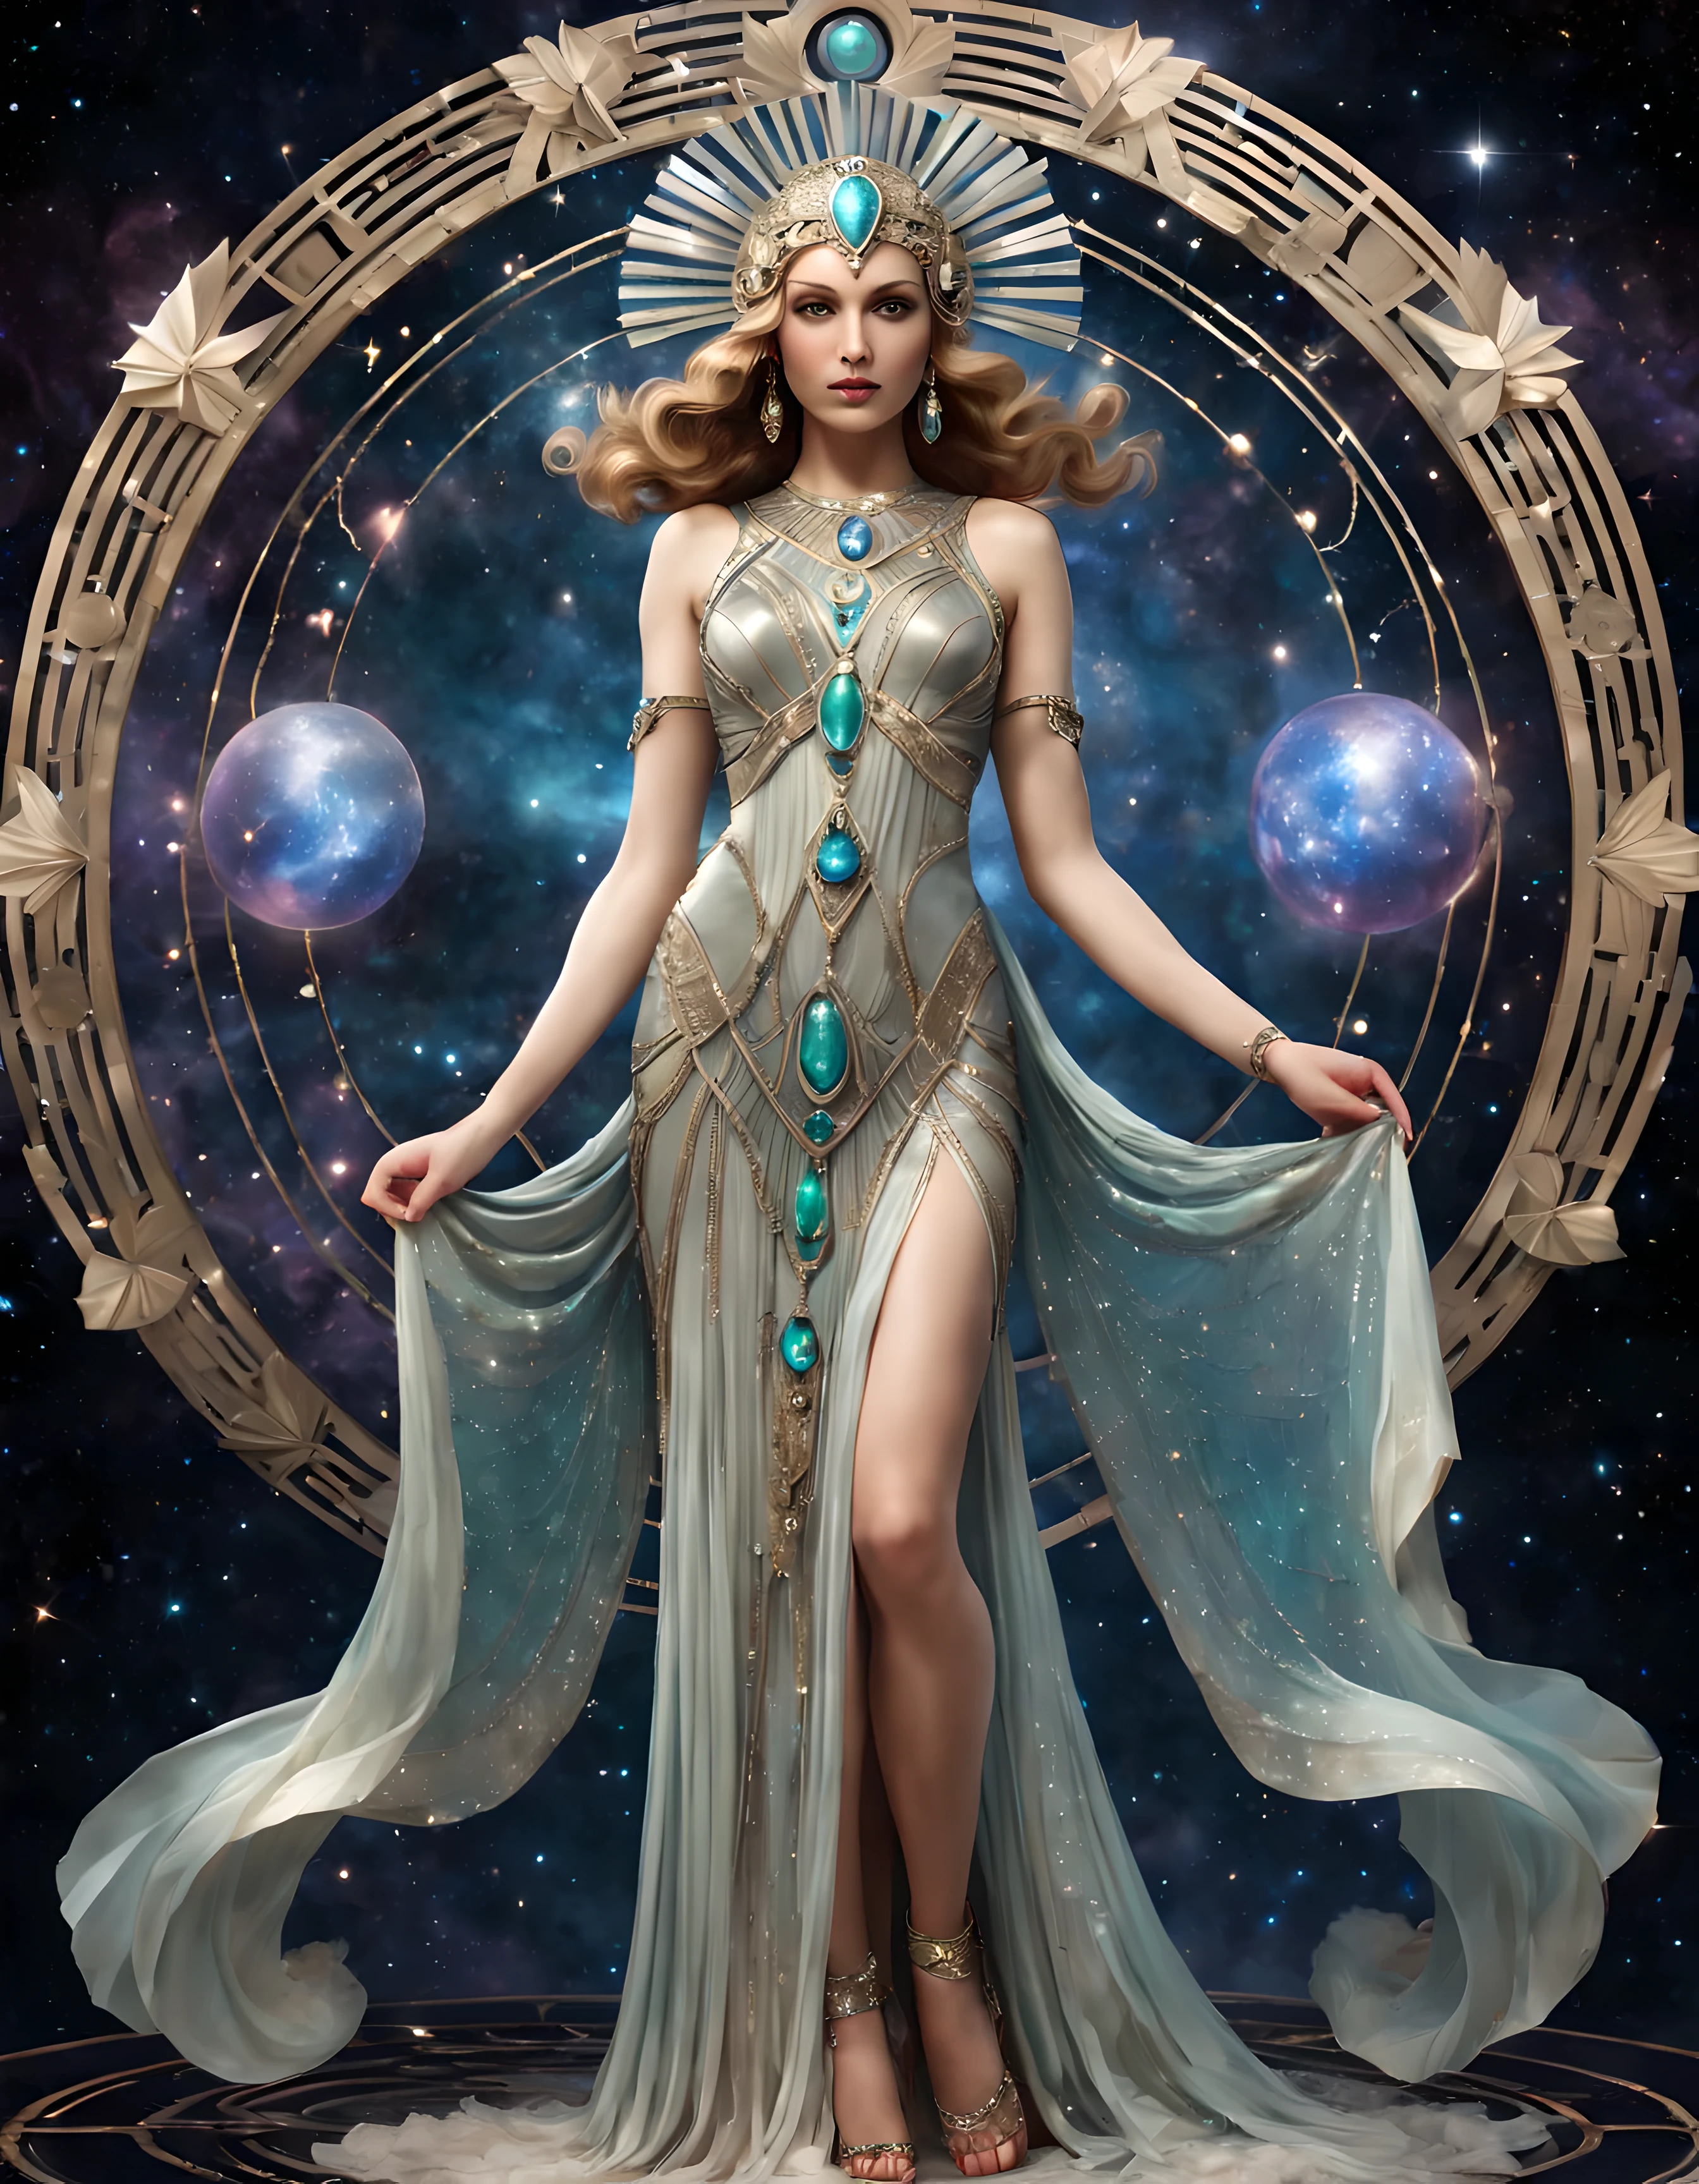 Foto de cuerpo entero de una hermosa diosa celestial con un cautivador vestido Art Déco adornado con rasgos etéreos y piedras preciosas., ((brillar)), fondo cósmico. | ((más_detalle))